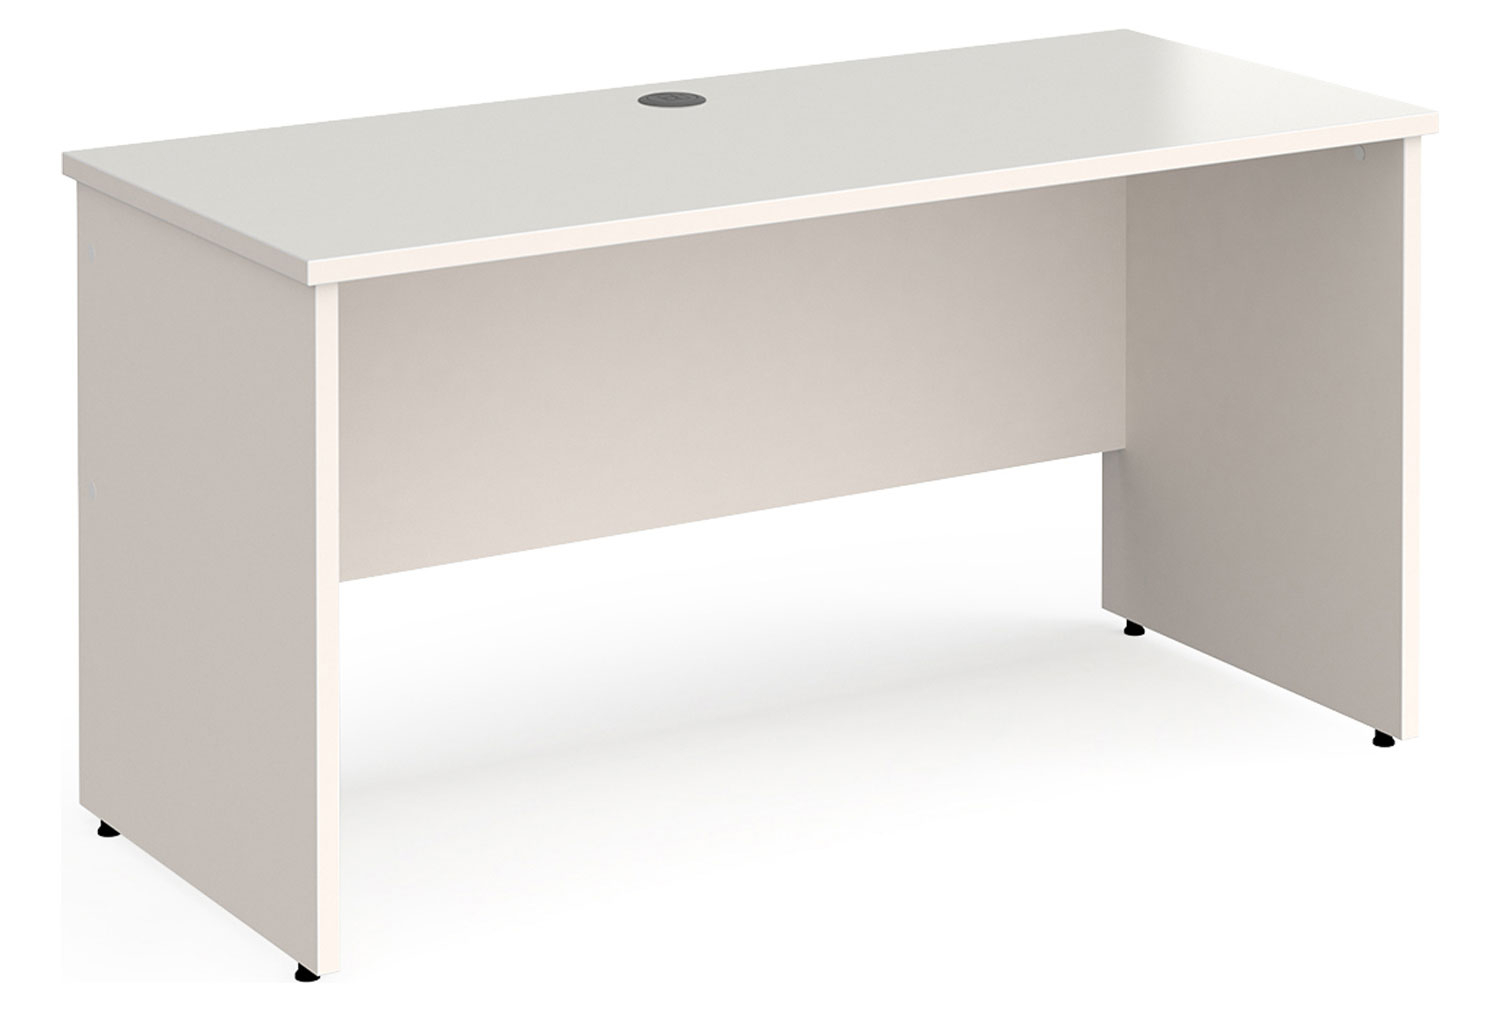 All White Panel End Narrow Rectangular Office Desk, 140wx60dx73h (cm)